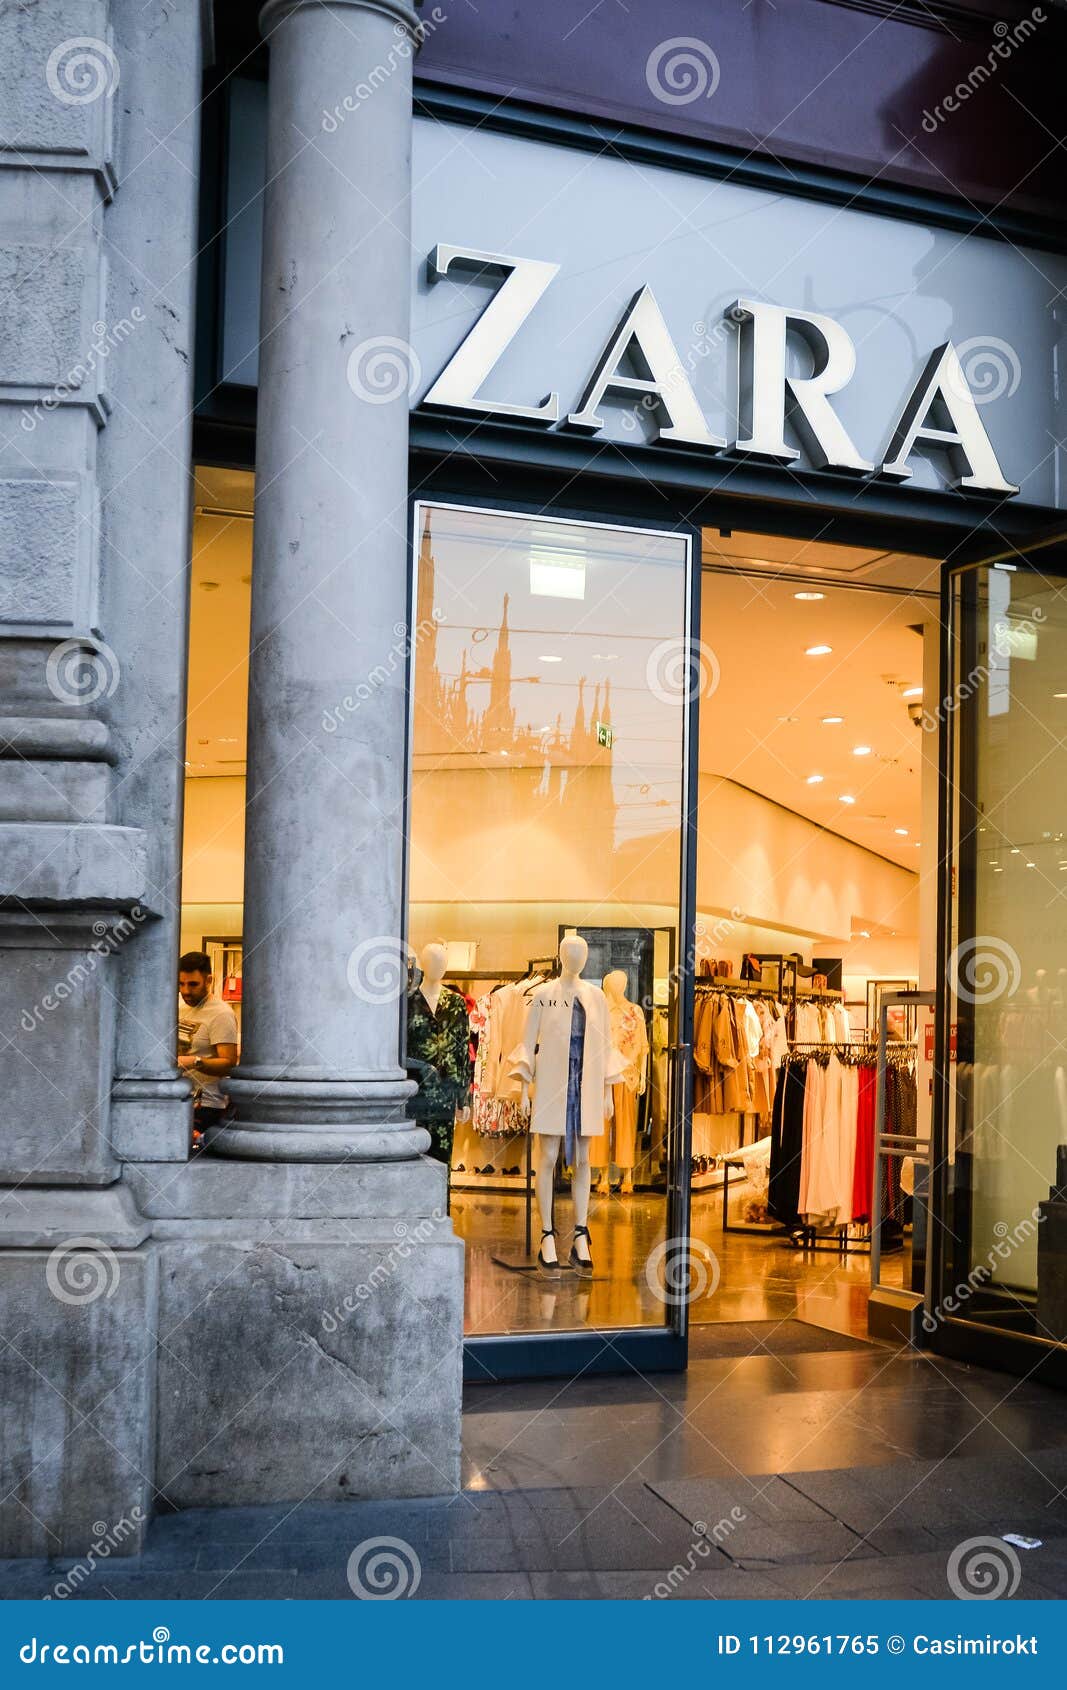 Milan, Italy - September 24, 2017: Prada store in Milan. Fashion